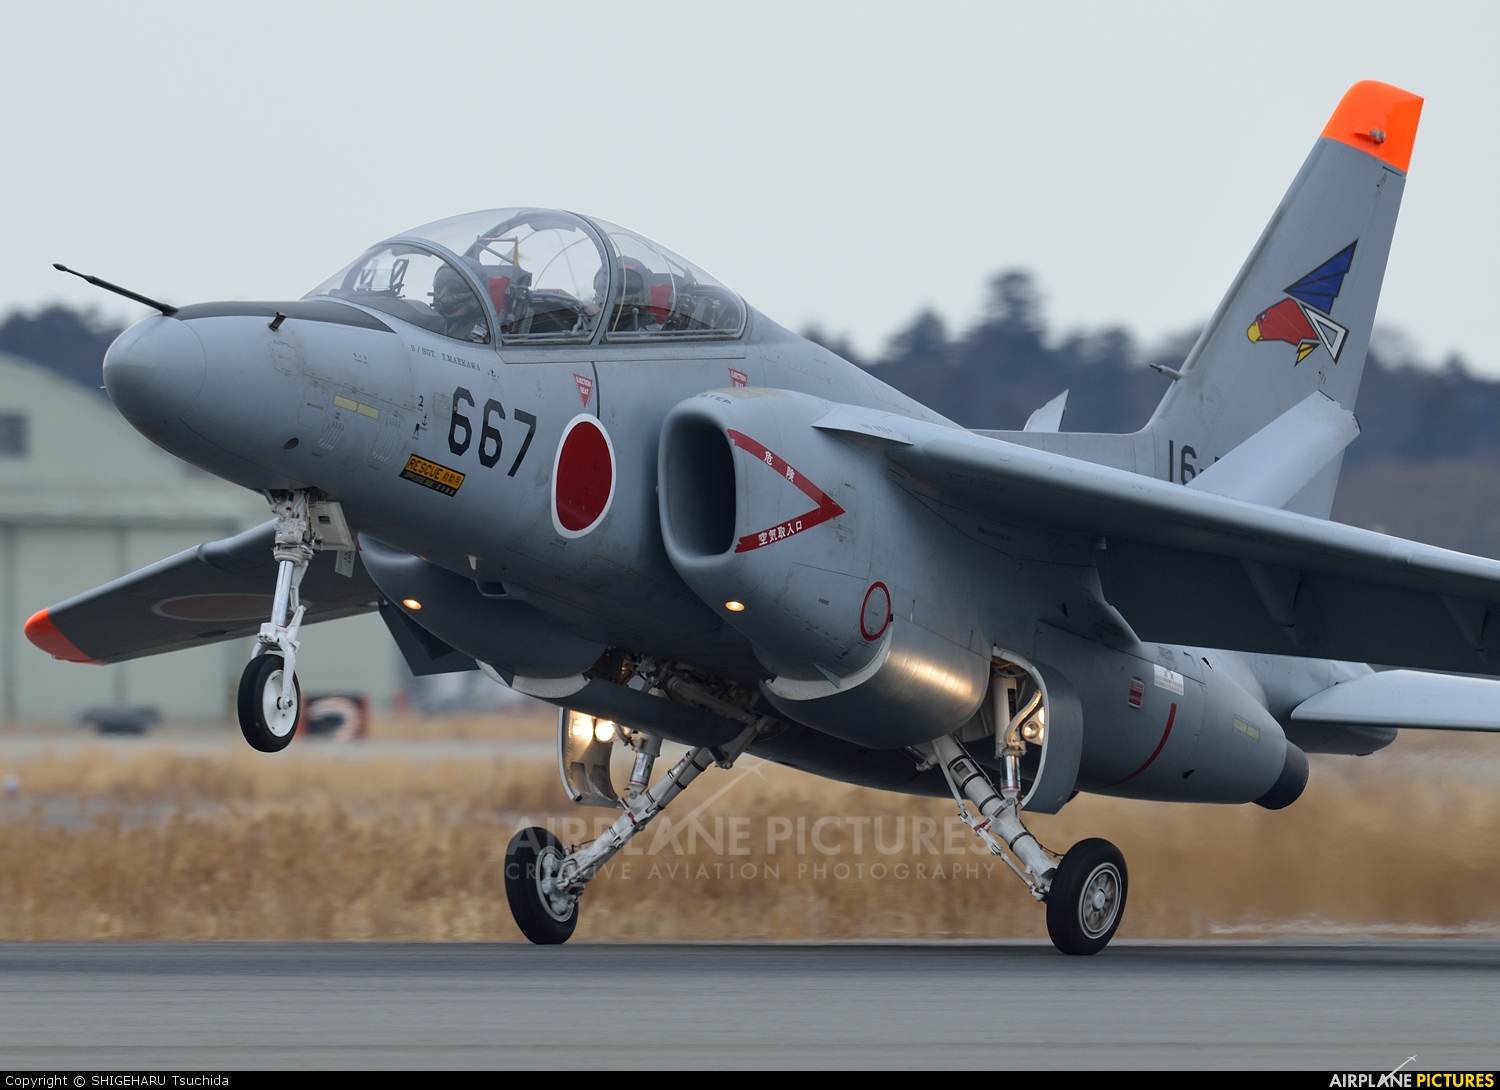 Japan - Air Self Defence Force 16-5667 aircraft at Ibaraki - Hyakuri AB